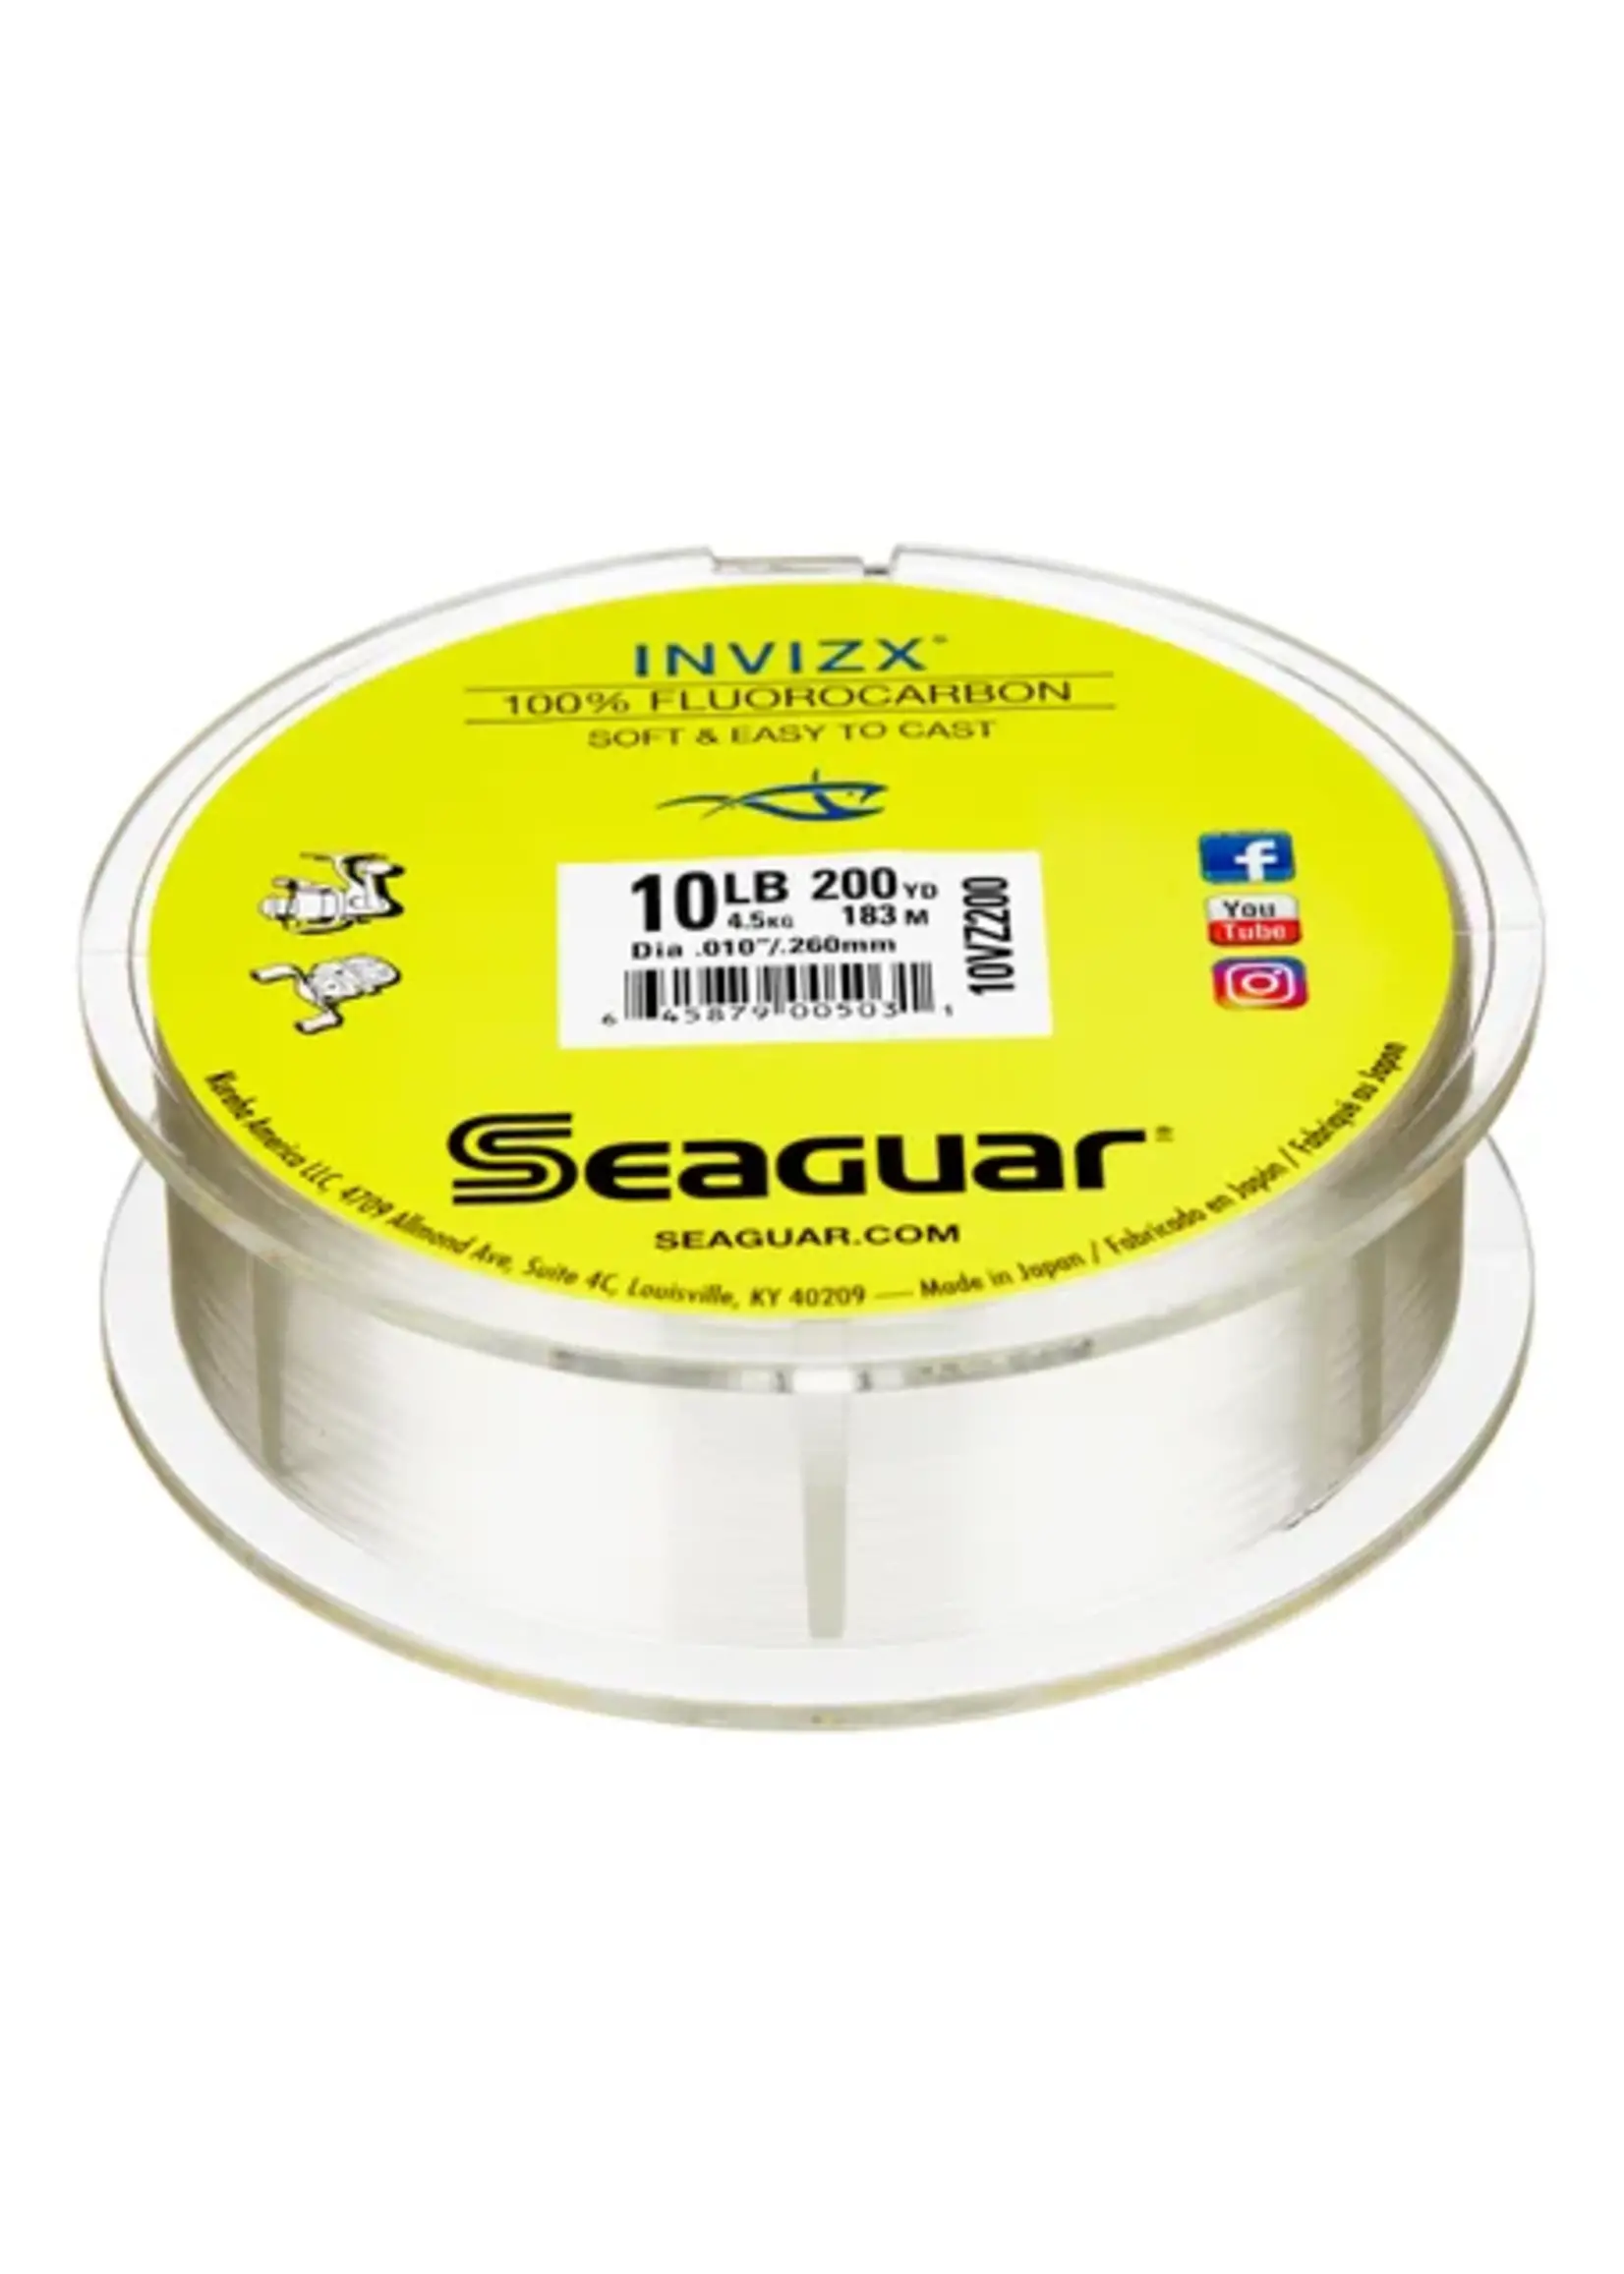 Seaguar Seaguar - Invizx - Fluorocarbon - 200yds - Clear -